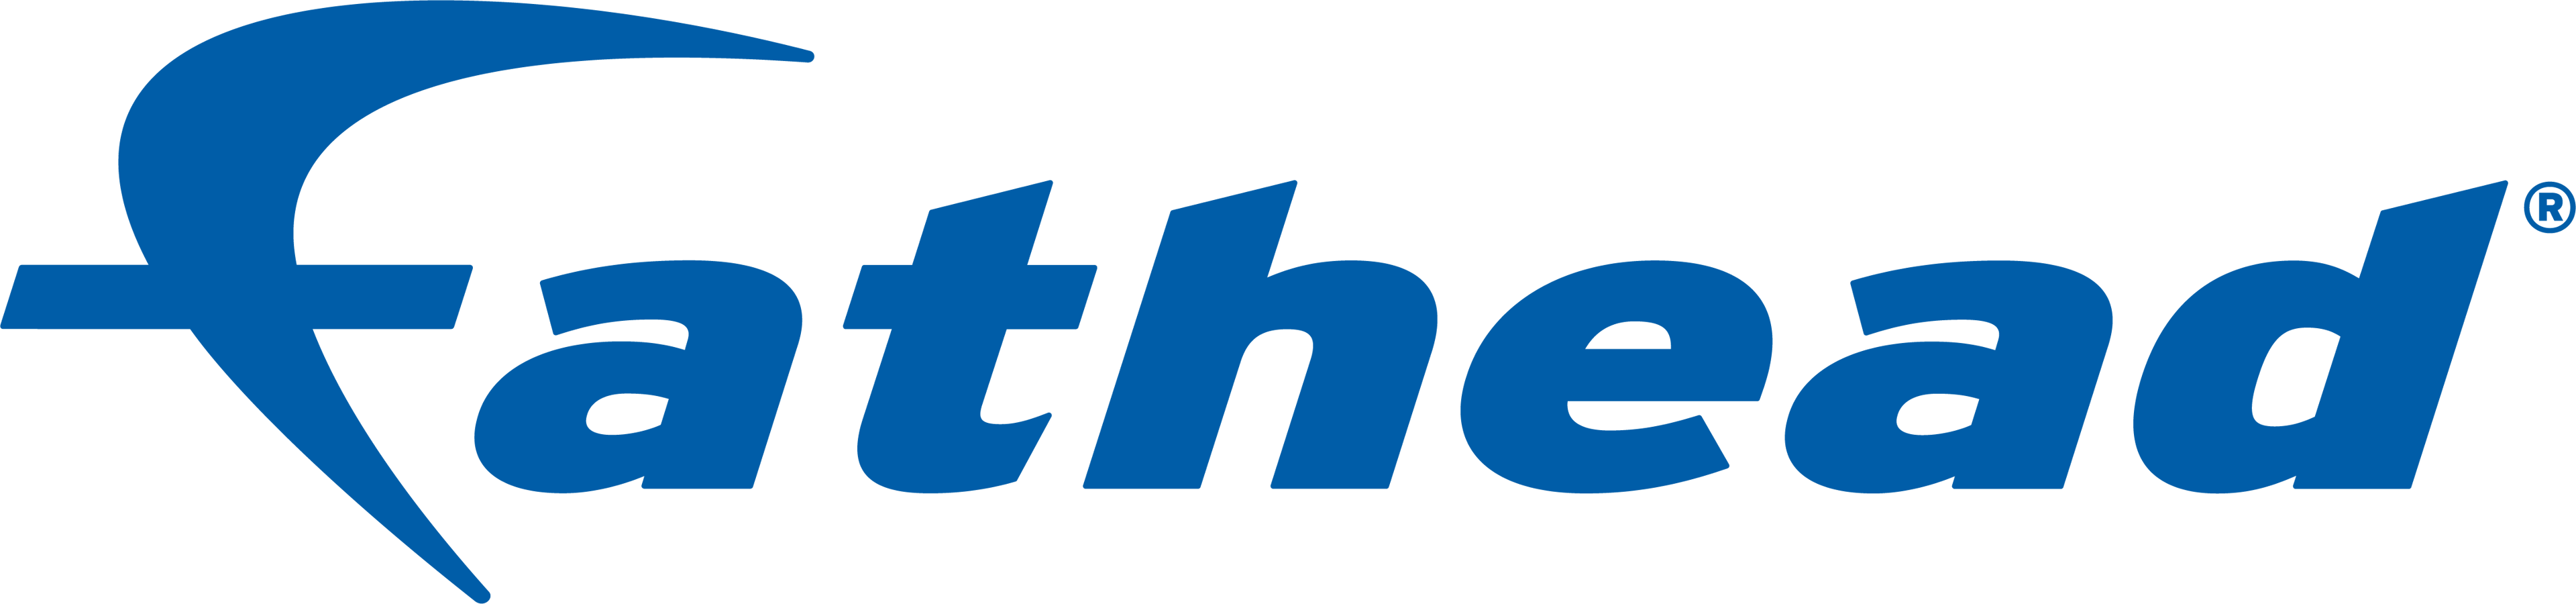 Fathead Help Center logo